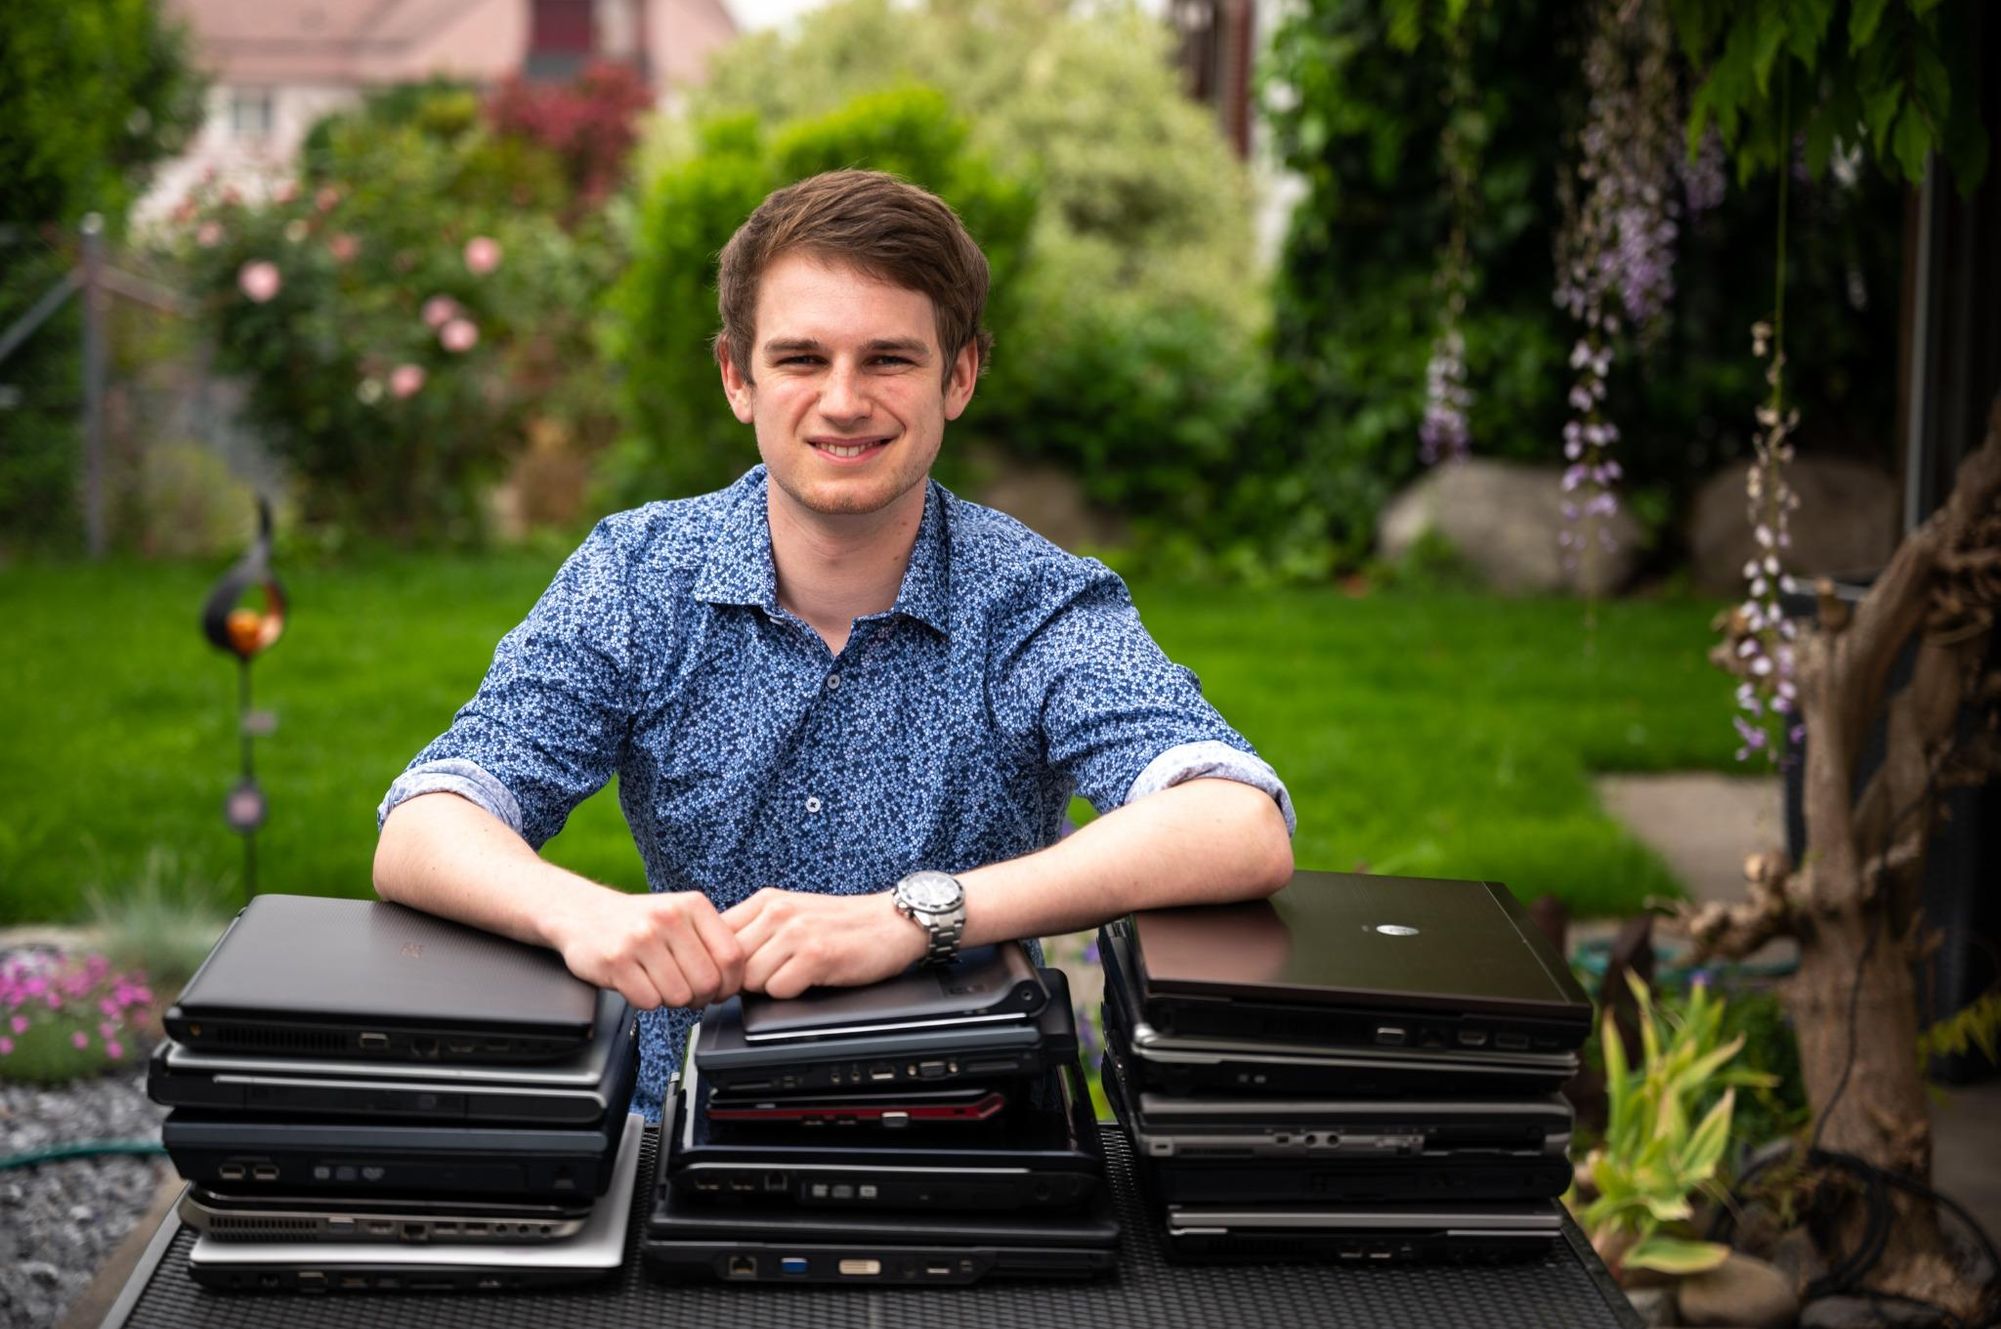 Wirtschaftsinformatik-Student sammelt alte Laptops für den guten Zweck